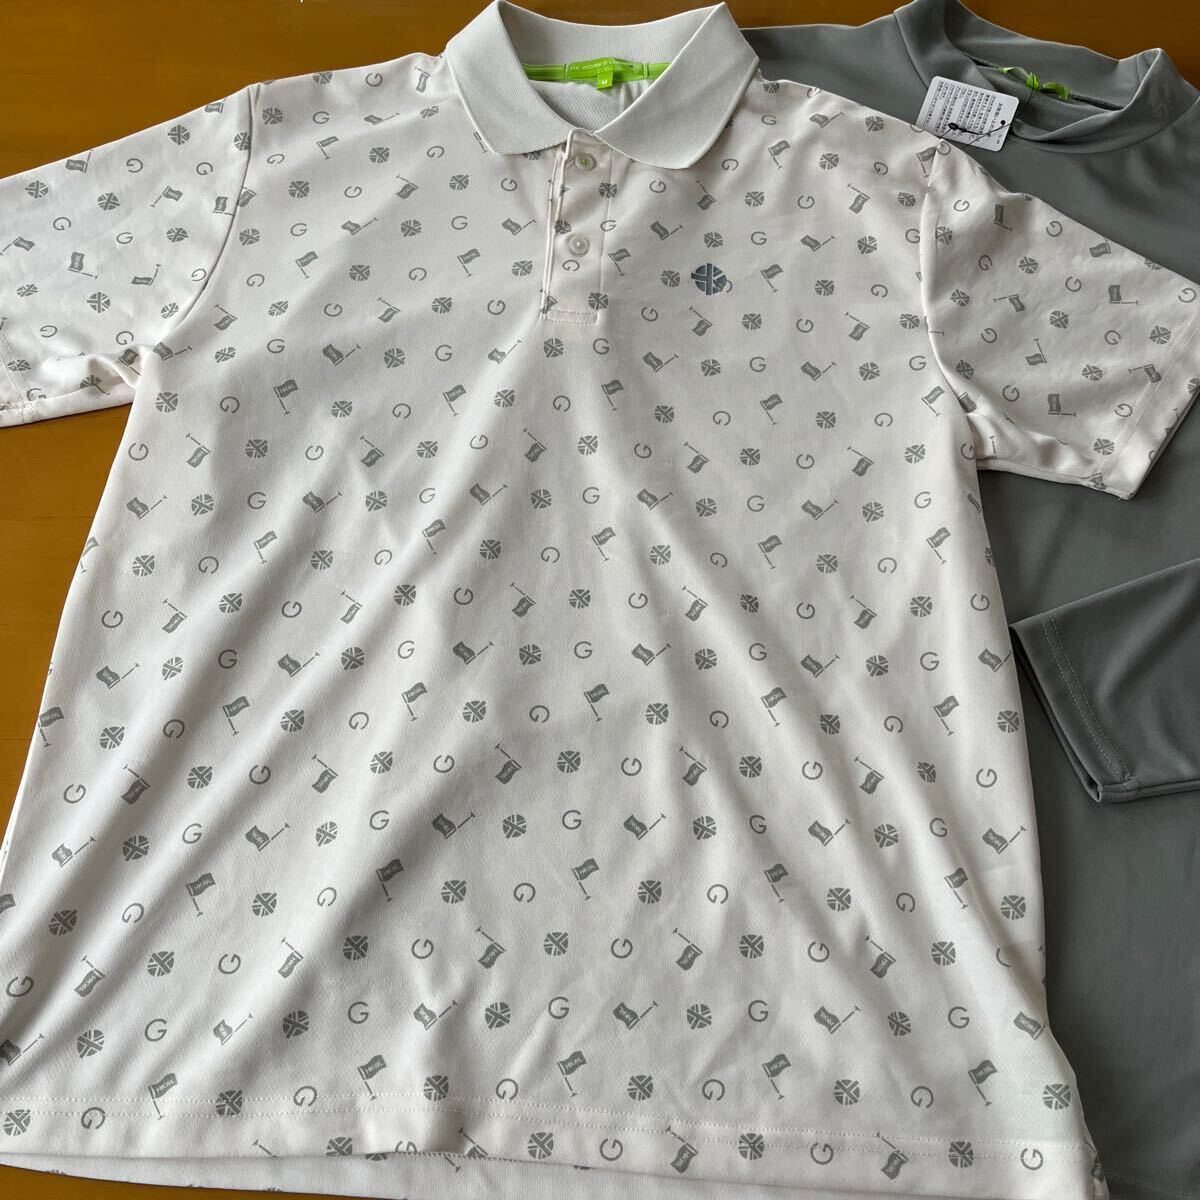 Mサイズ 春物新品 HK WORKS LONDON Green コシノ ヒロコ GOLF ゴルフ サラッと快適 3WAYシャツ二枚セットの画像2